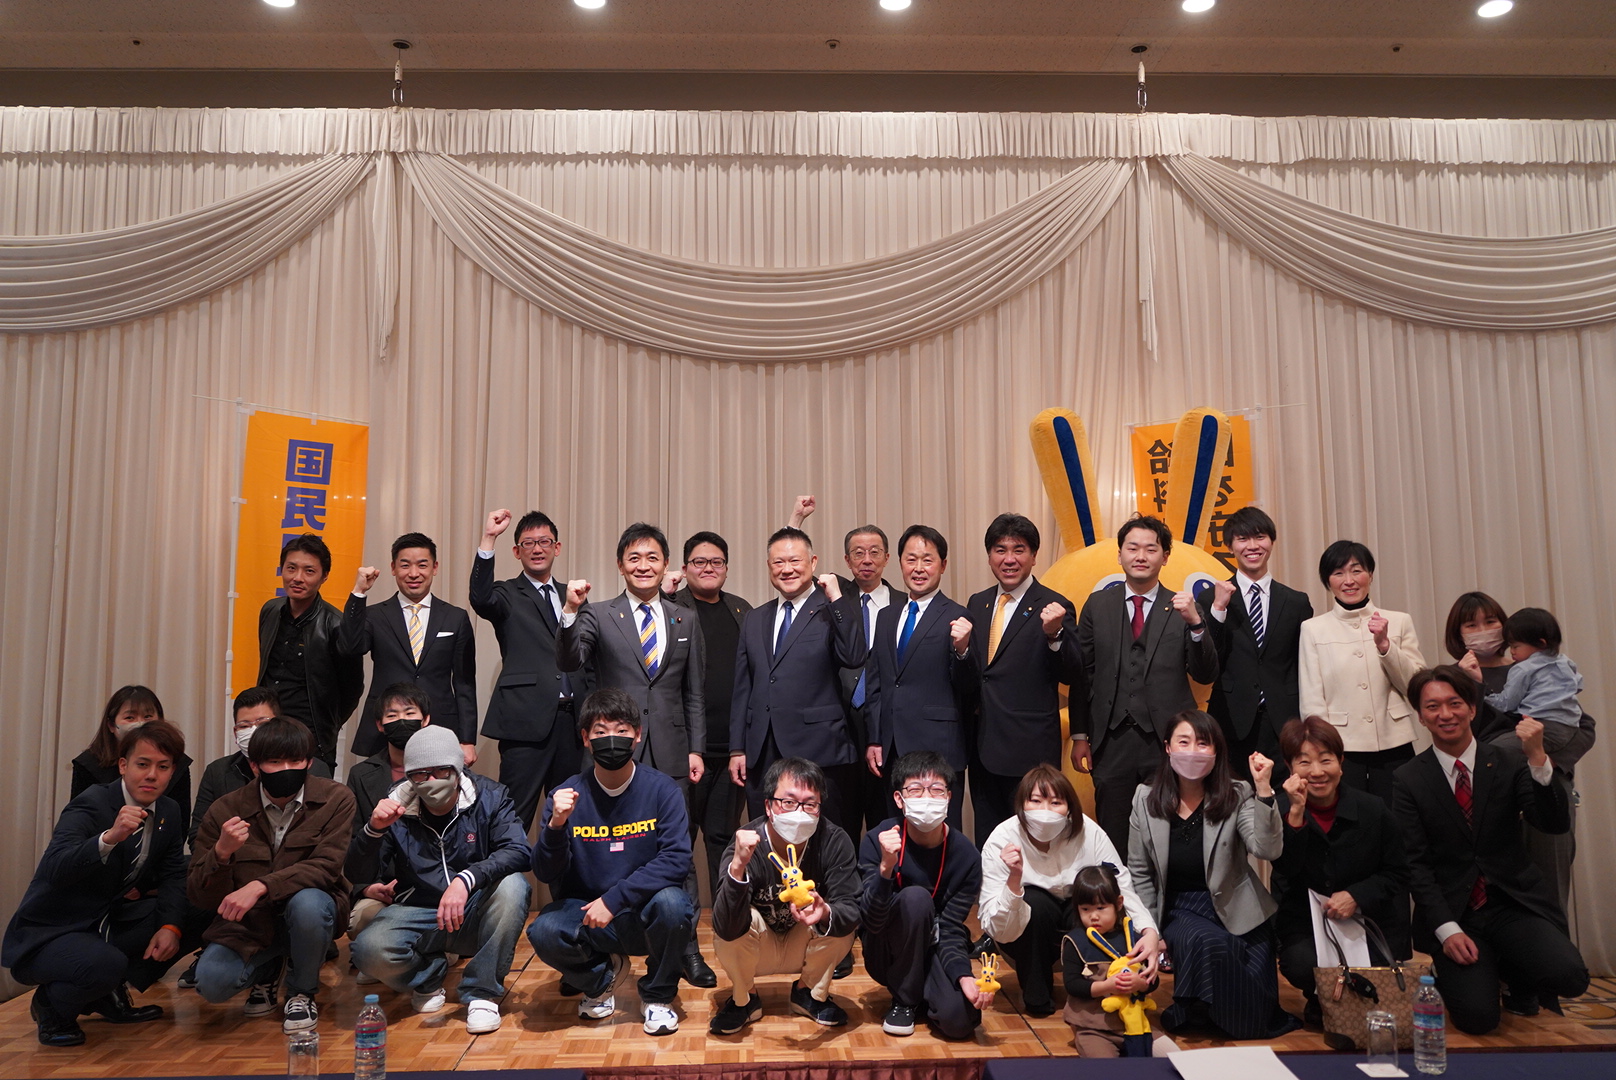 【大阪】「今やるべきことは増税ではなく経済の活性化」玉木代表が街頭演説会・タウンミーティングに参加